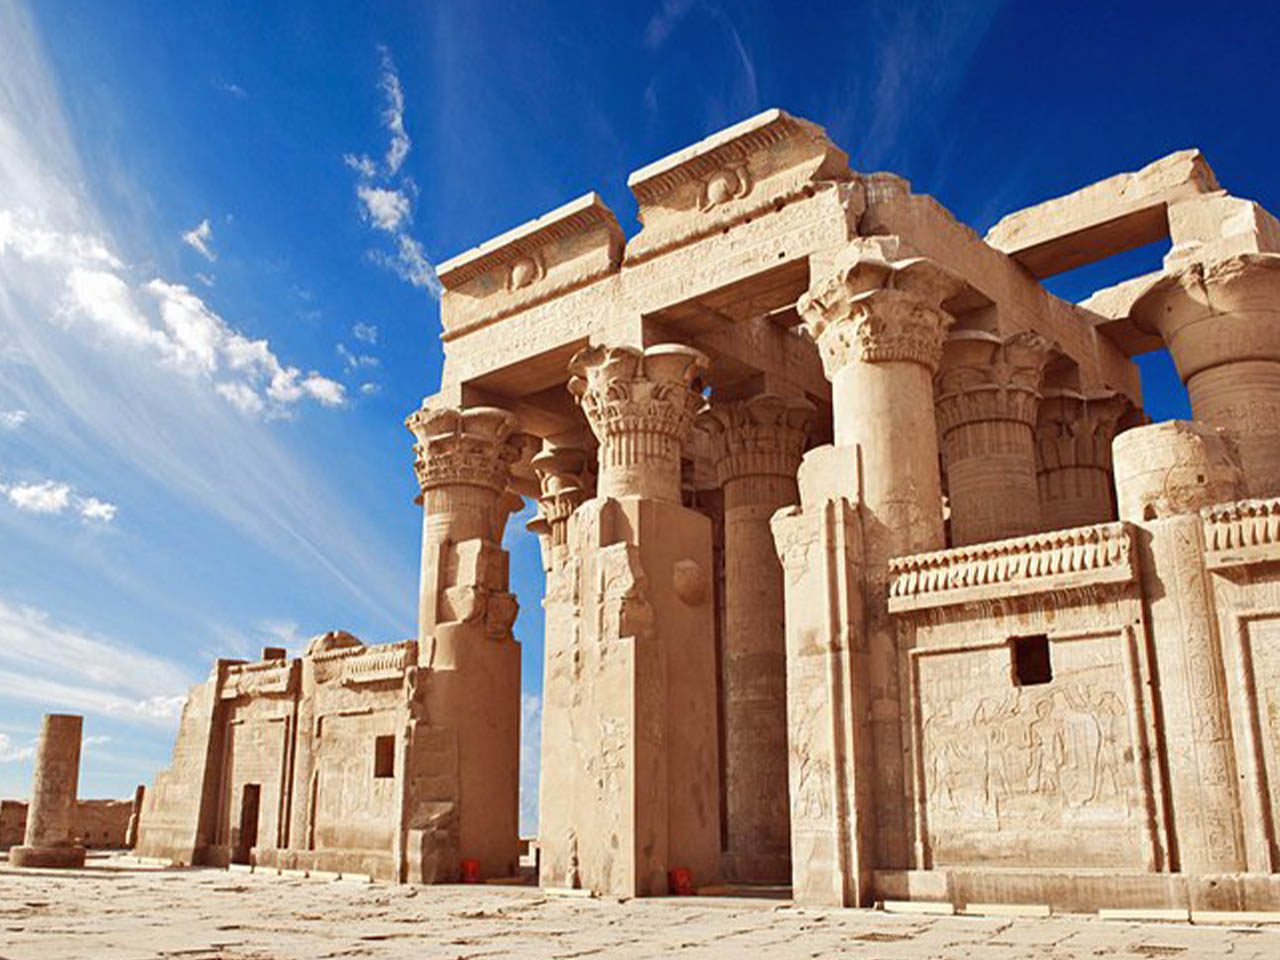 Miglior itinerario in Egitto 11 giorni crociera al Cairo e sul Nilo